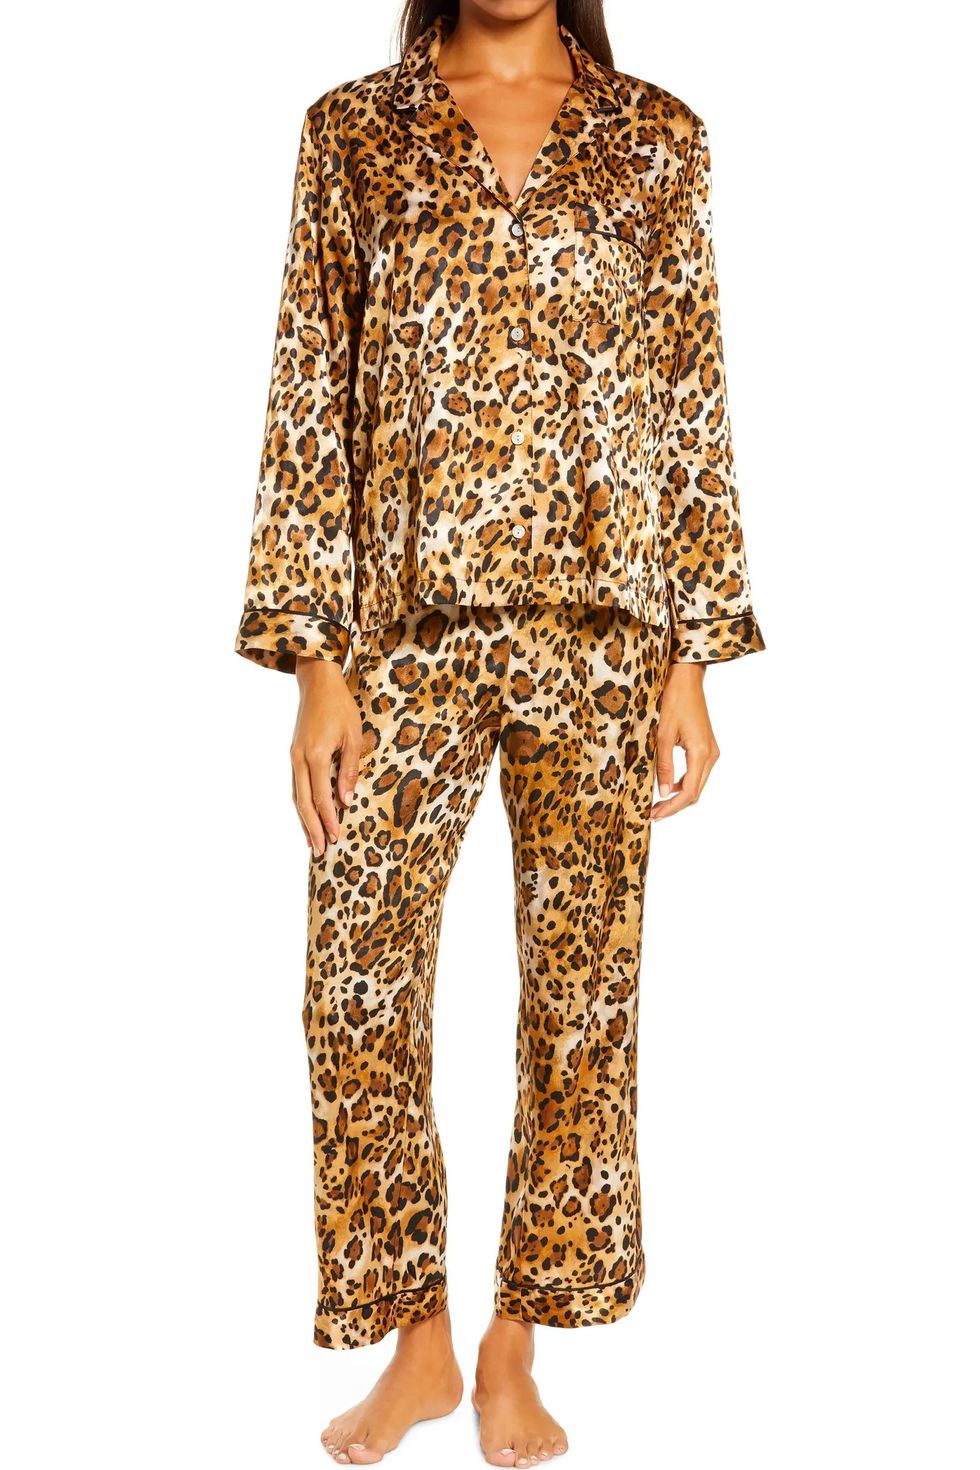 Cheetah Print Pajamas